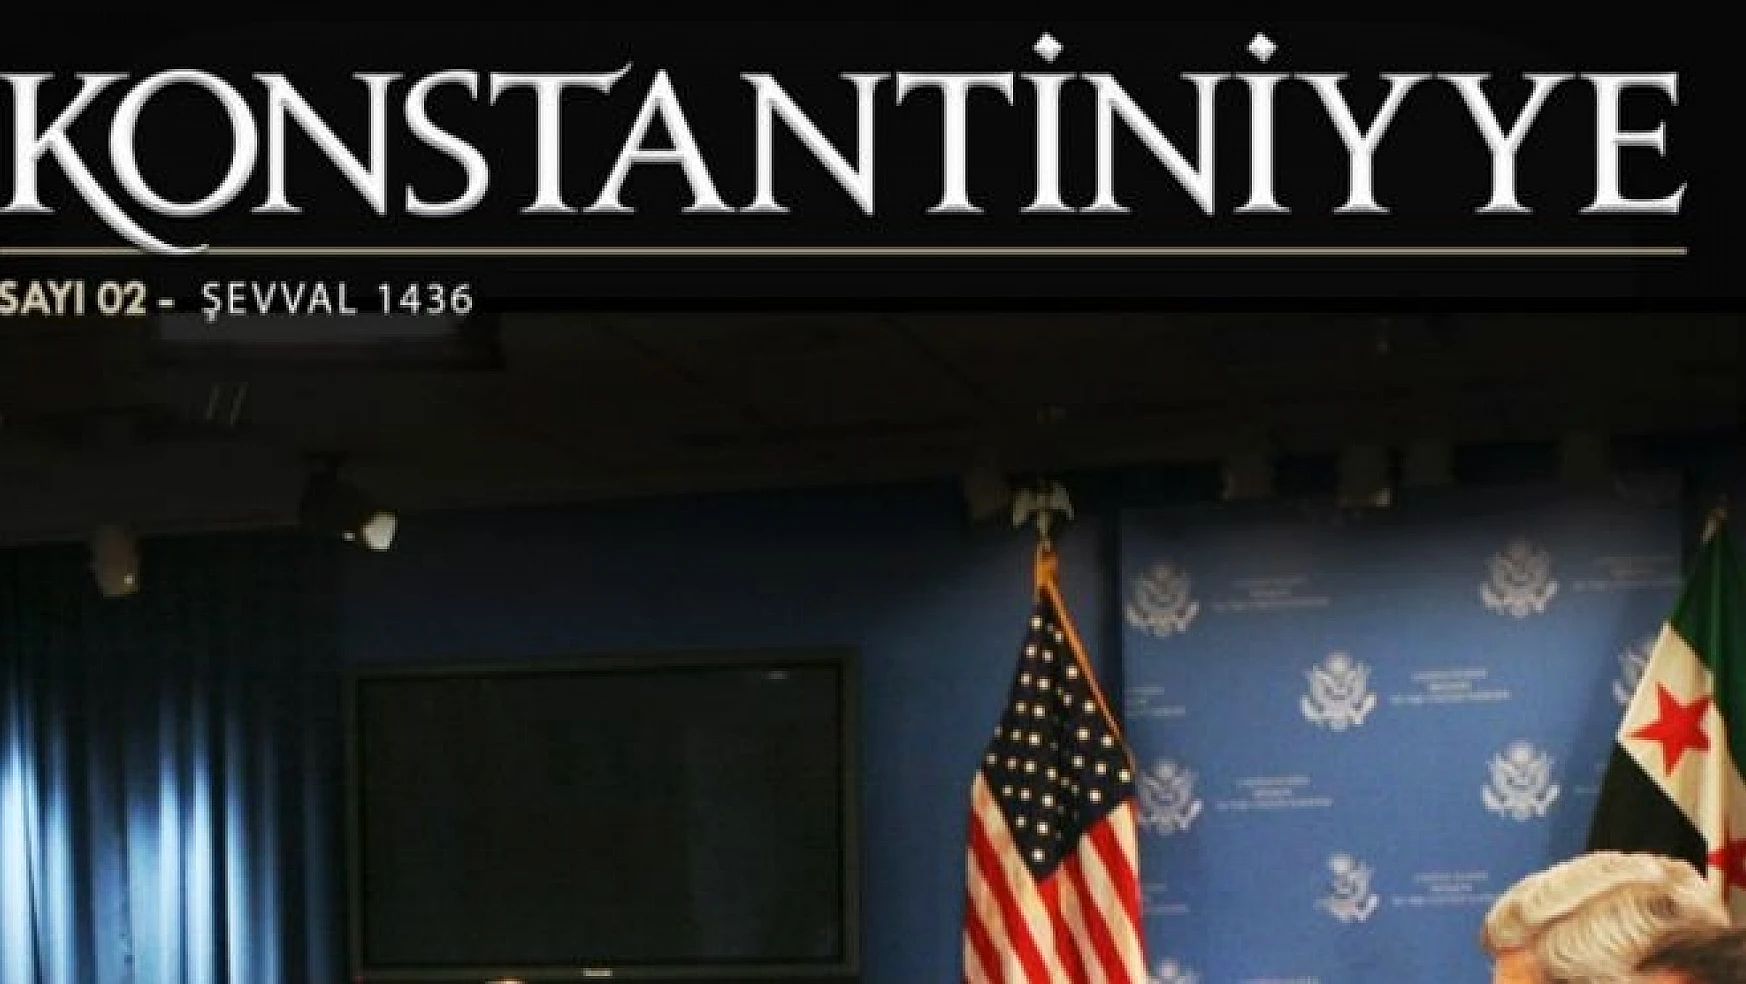 IŞİD Konstantiniyye'nin ikinci sayısını yayımlandı